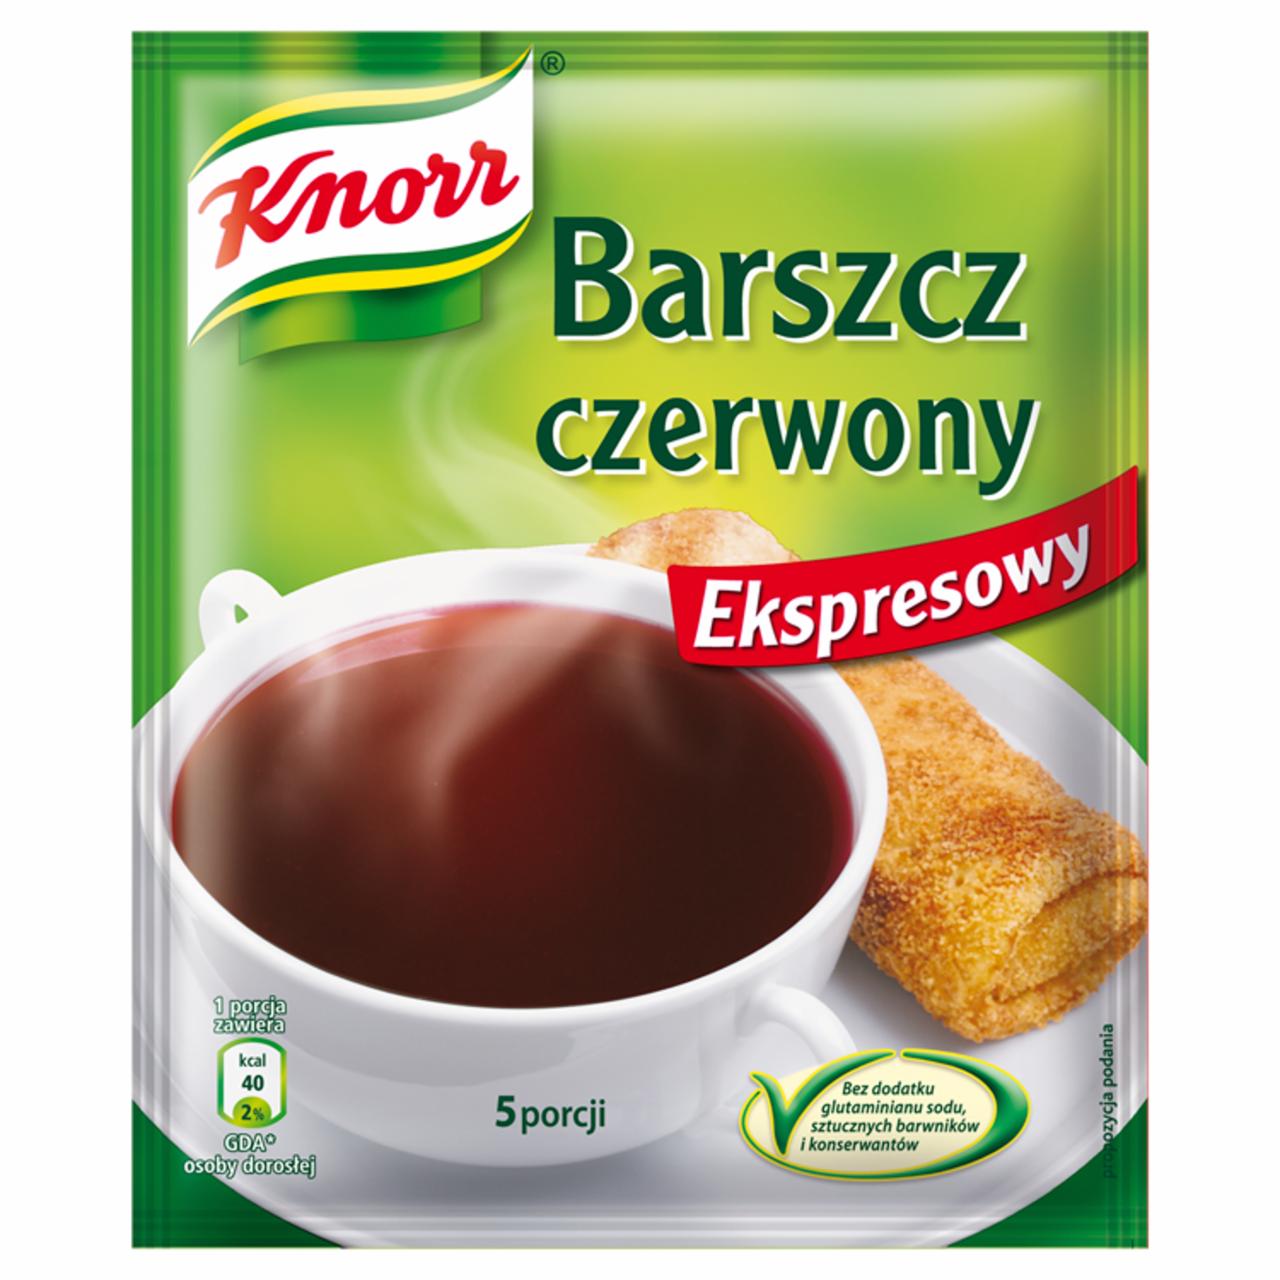 Zdjęcia - Knorr Barszcz czerwony ekspresowy 55 g